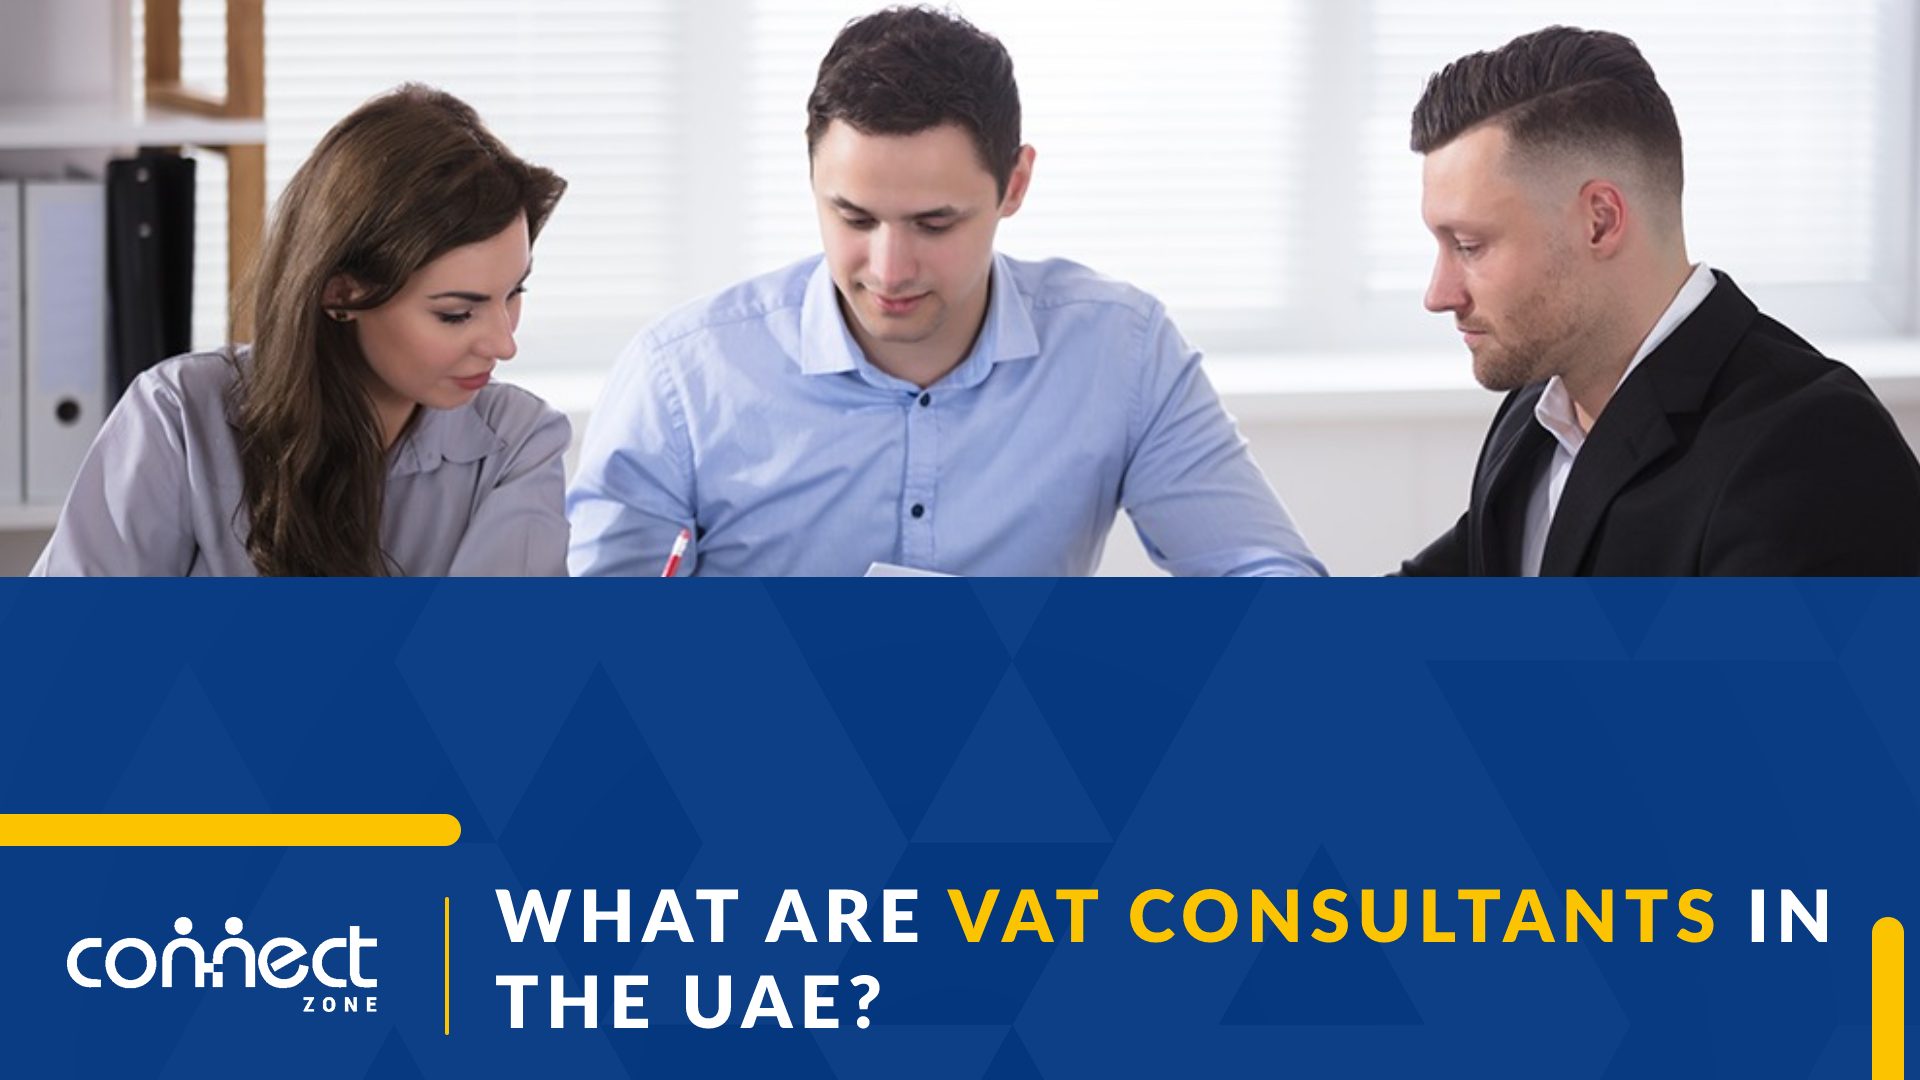 VAT consultants in the UAE